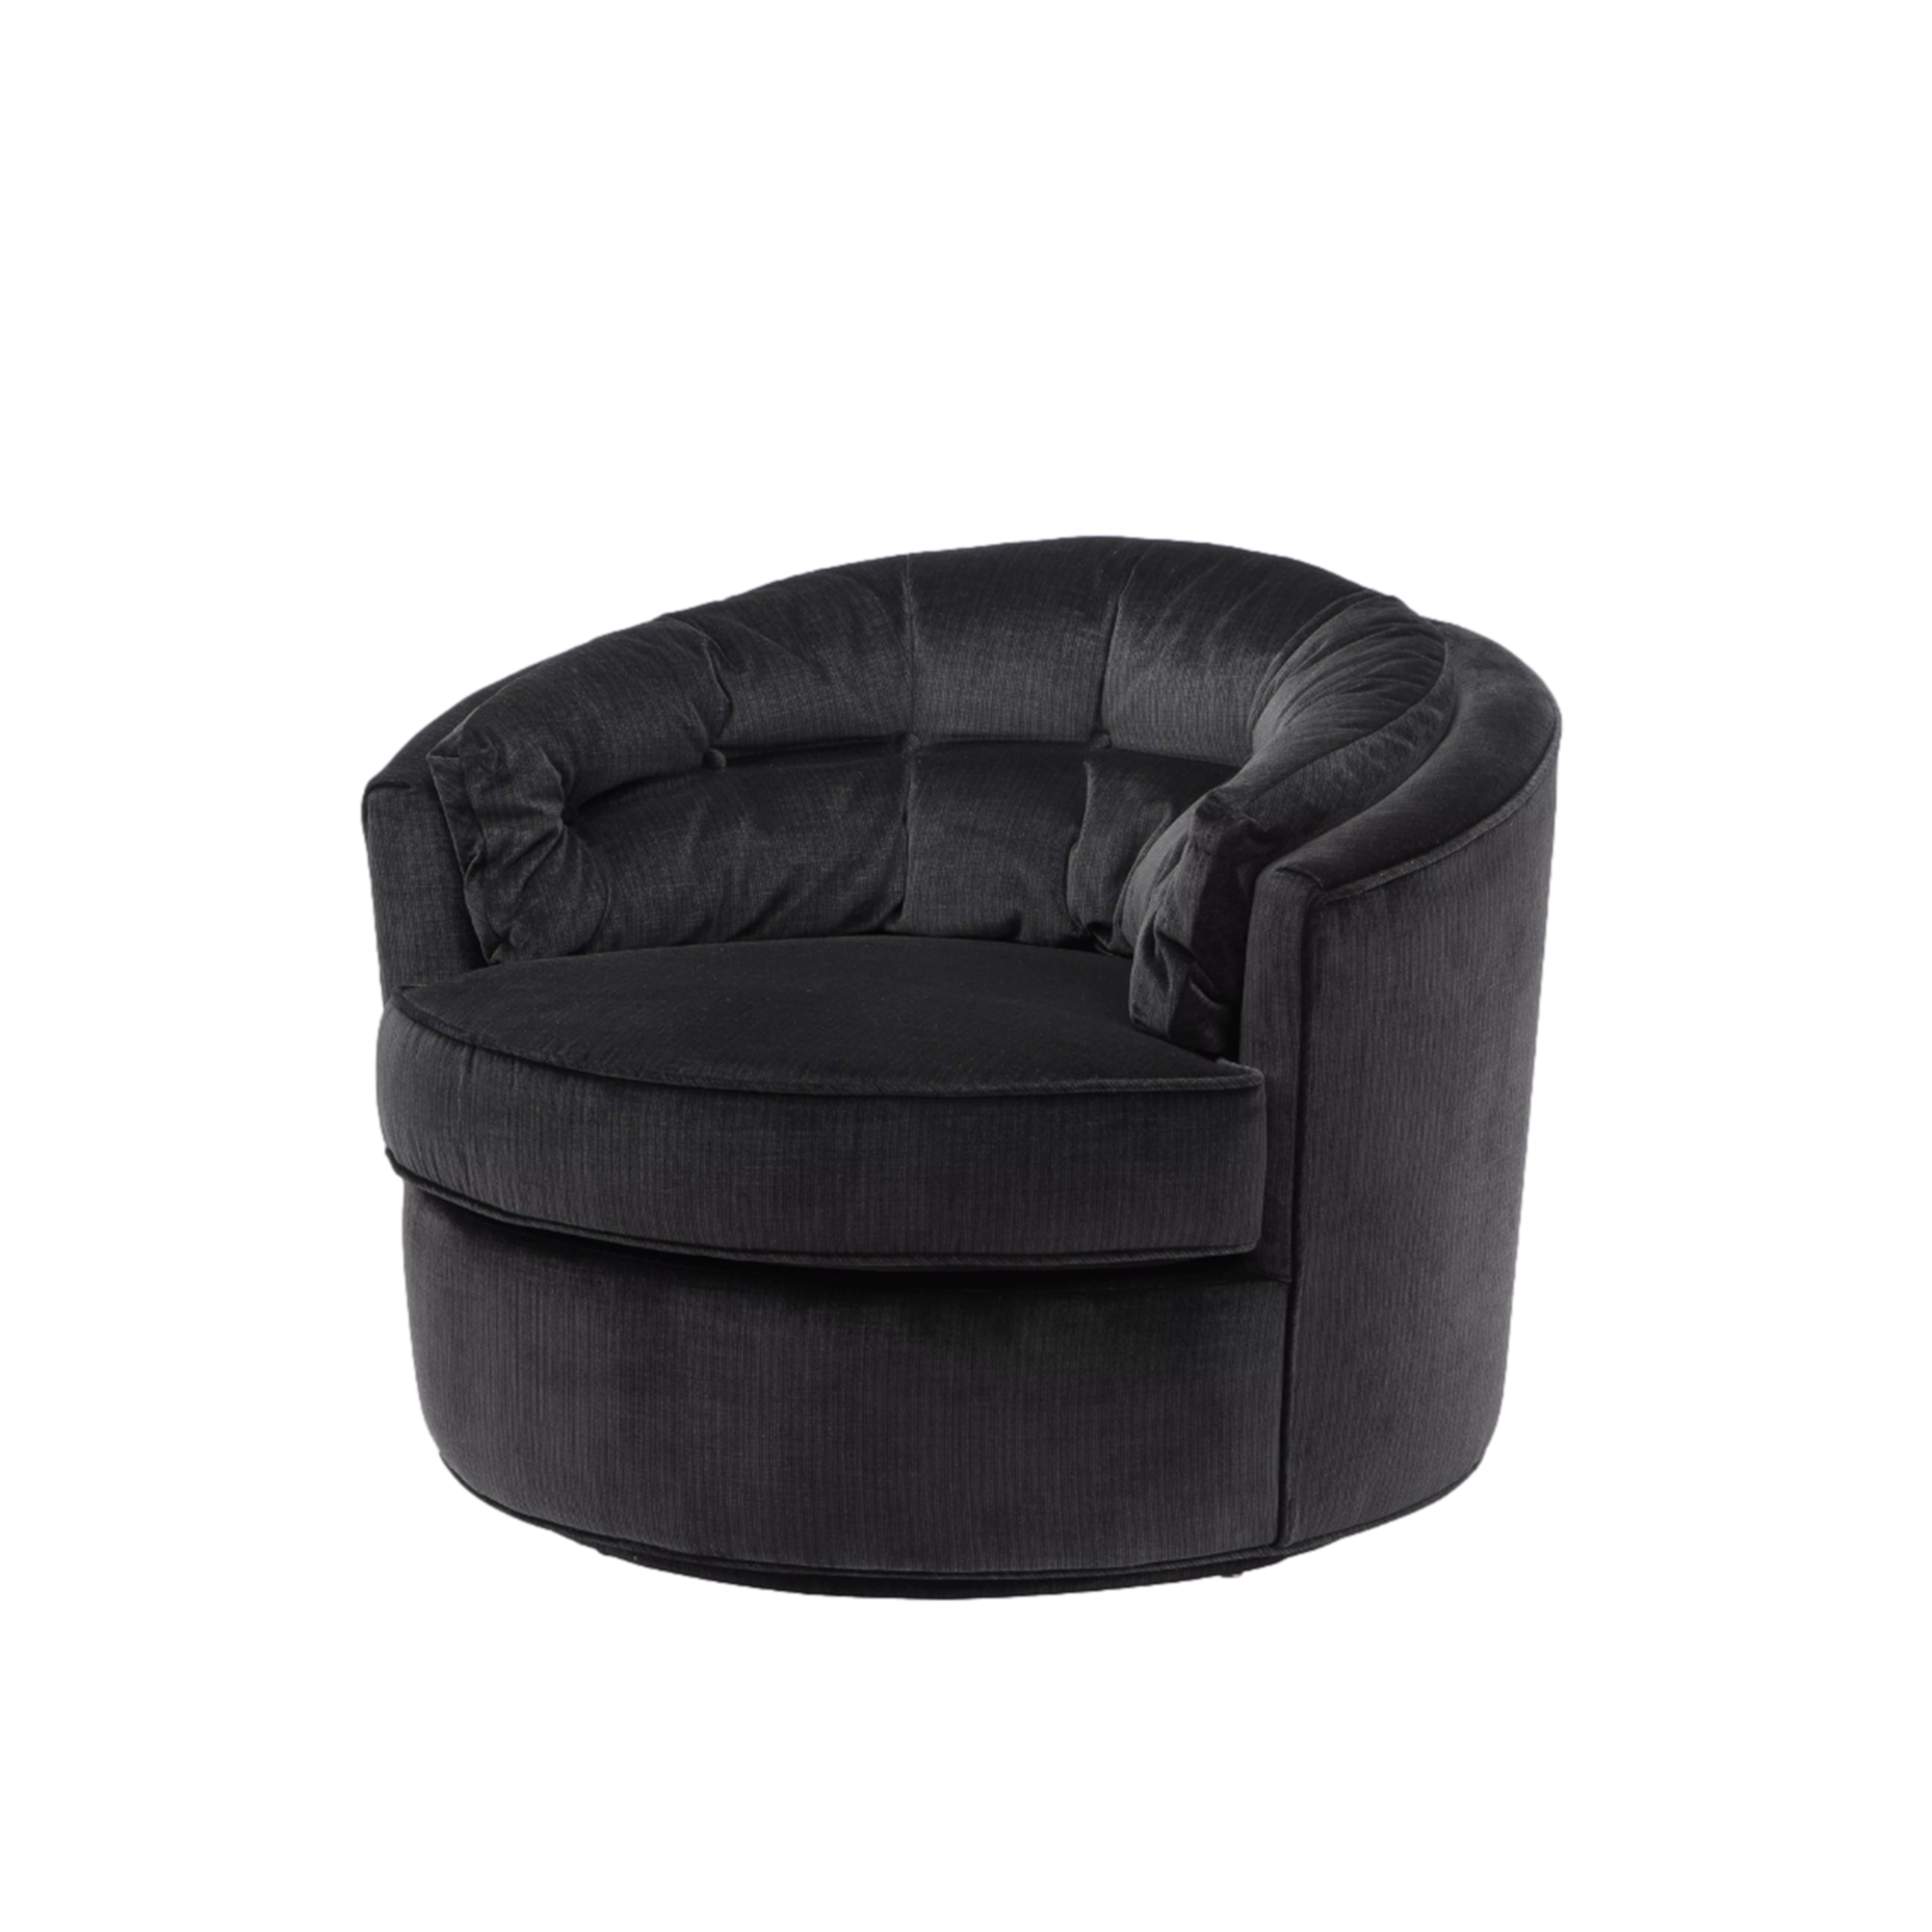 Recla Chair in Black